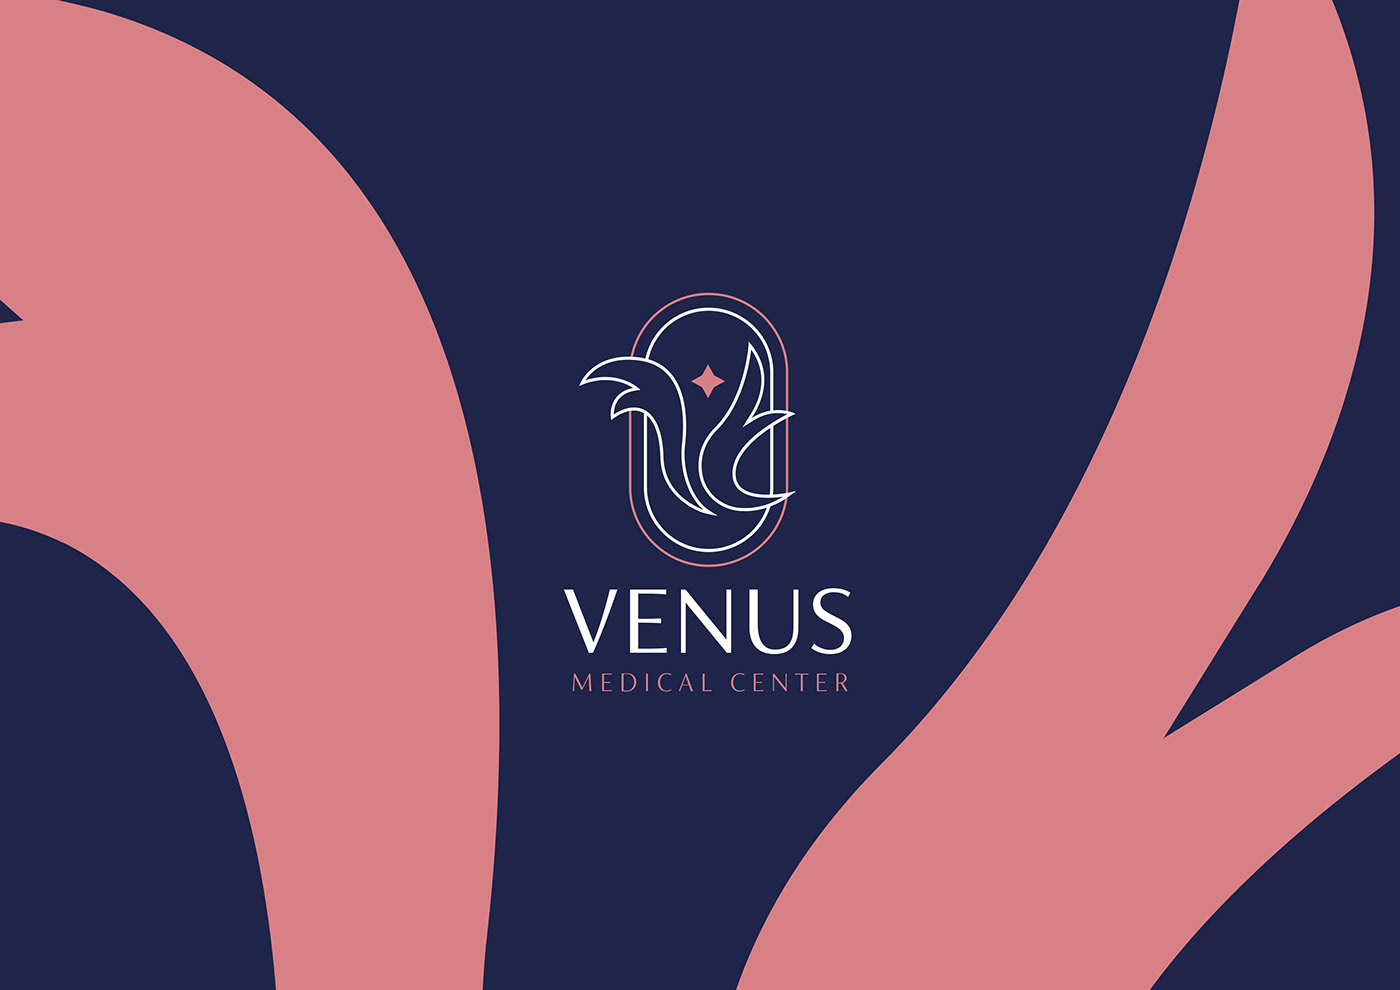 Brand Design branding  clinic logo medical medical center skin skincare venus women